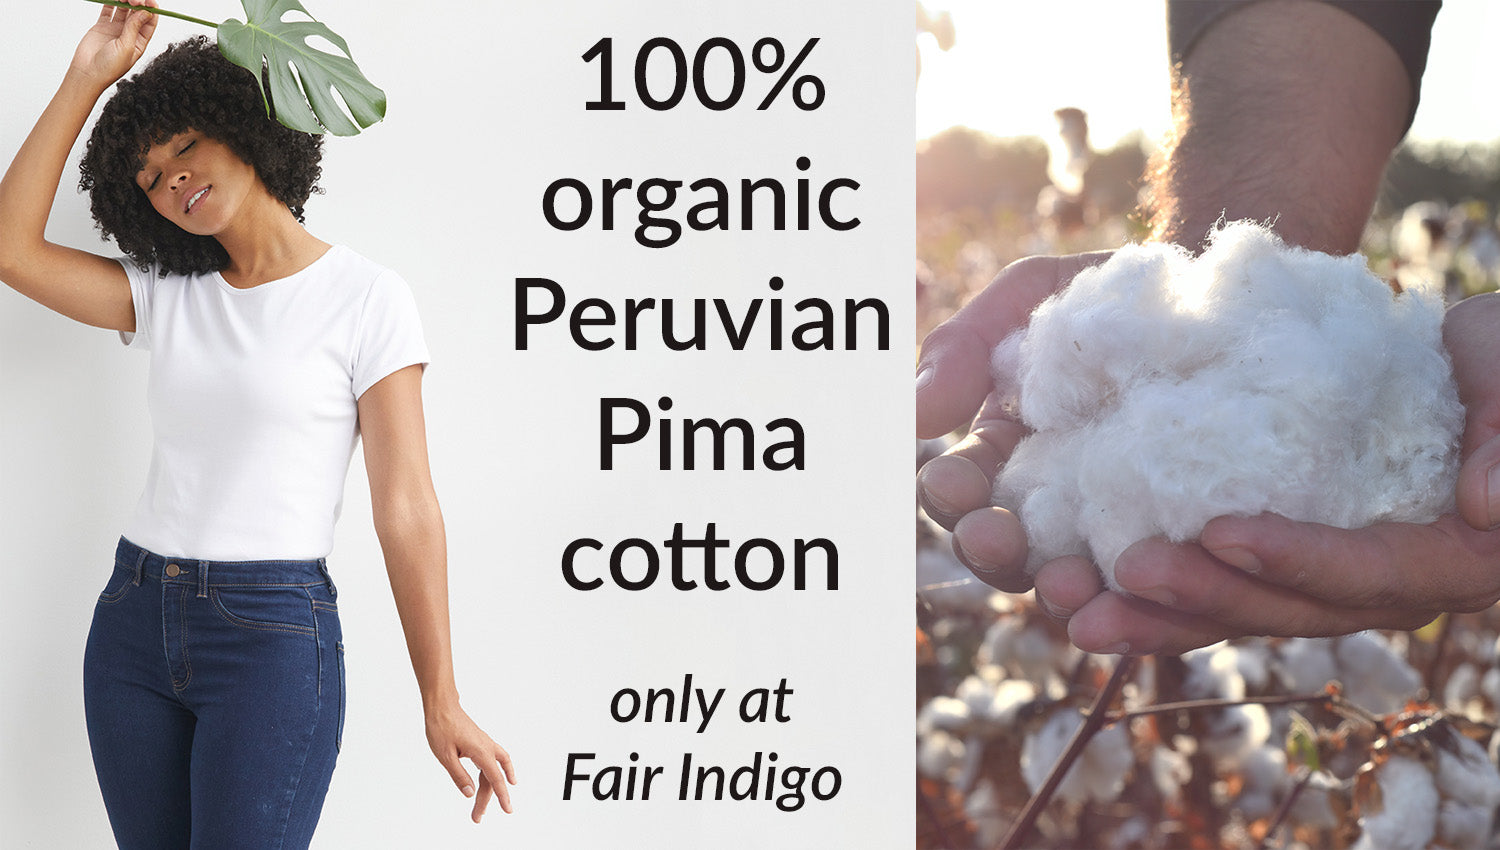 100% organic cotton clothing - organic Pima cotton clothes fair trade ethically made